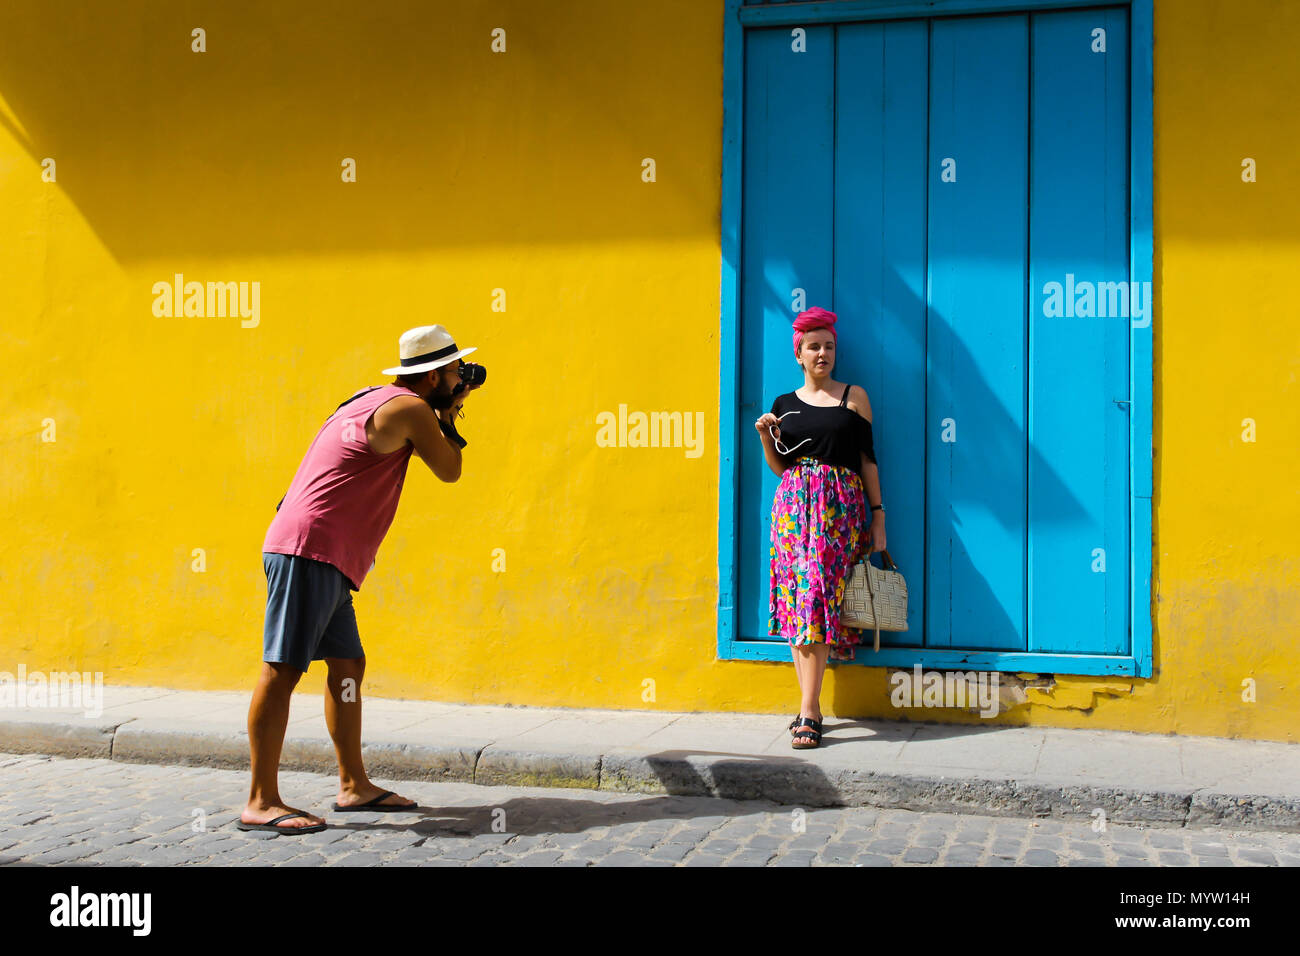 L'homme prend une photo d'une jeune fille à La Havane Cuba contre un mur jaune Banque D'Images